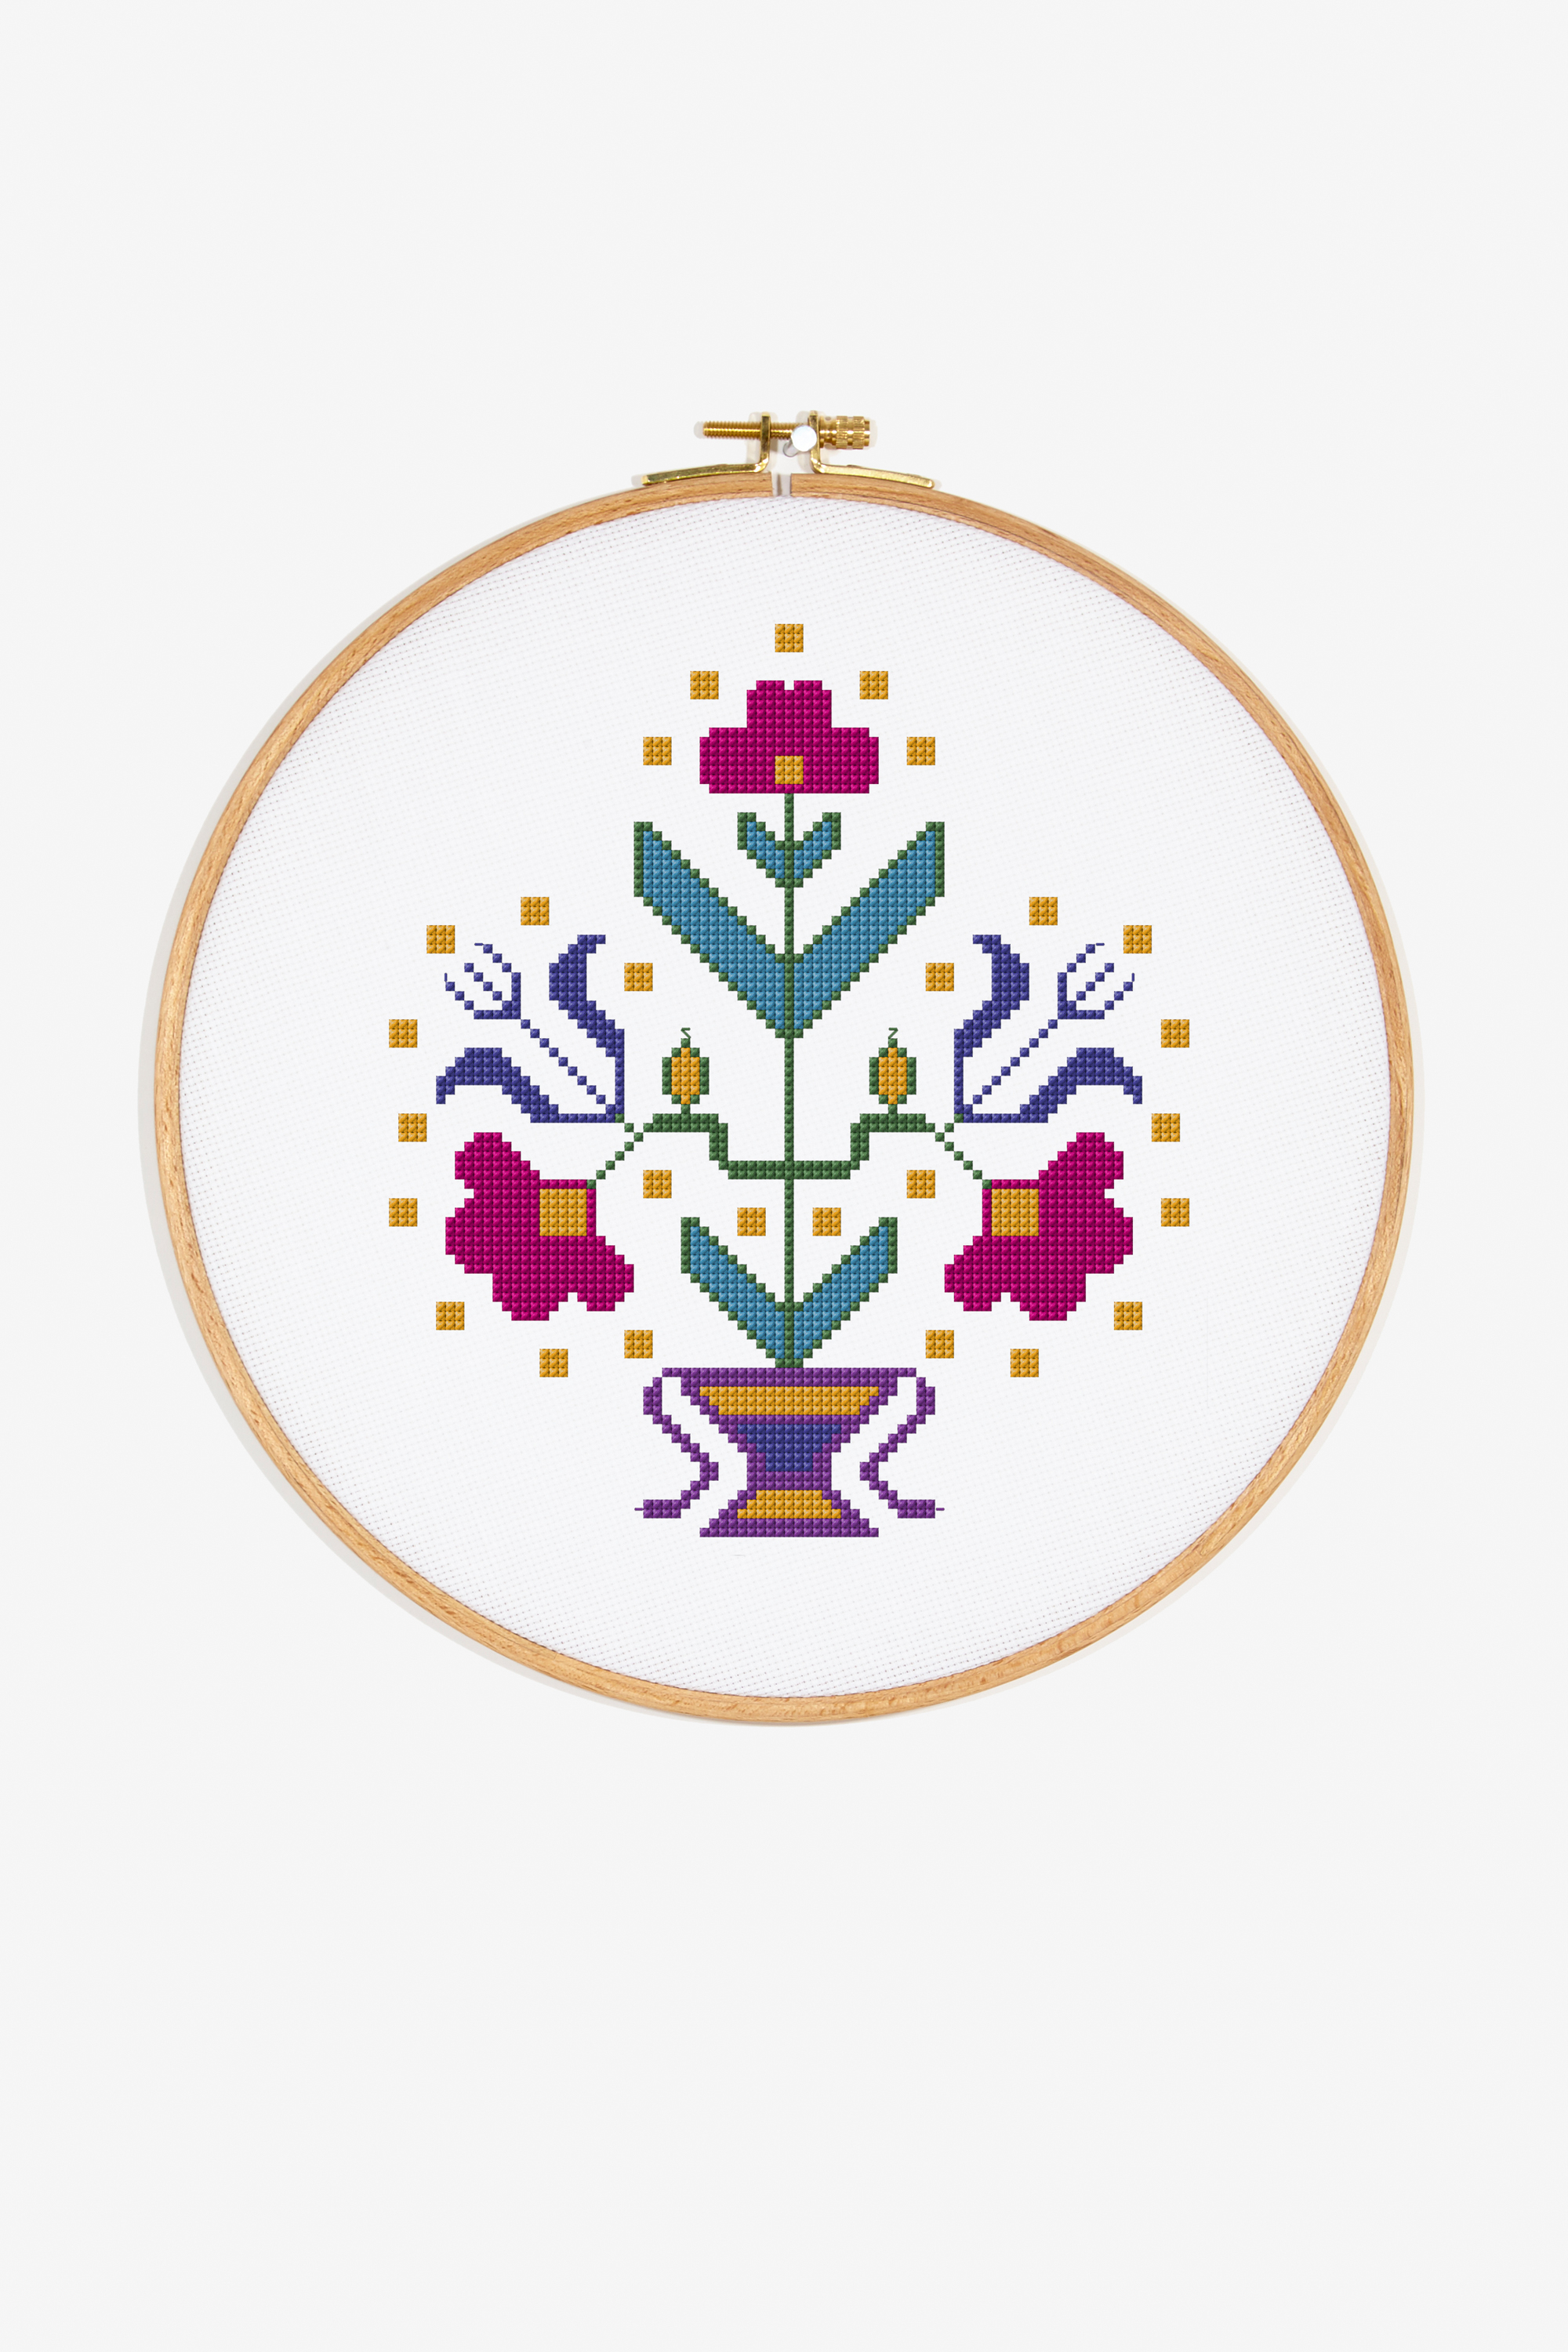 Turkish Embroidery Patterns Symmetrical Turkish Flowers Pattern Free Cross Stitch Patterns Dmc